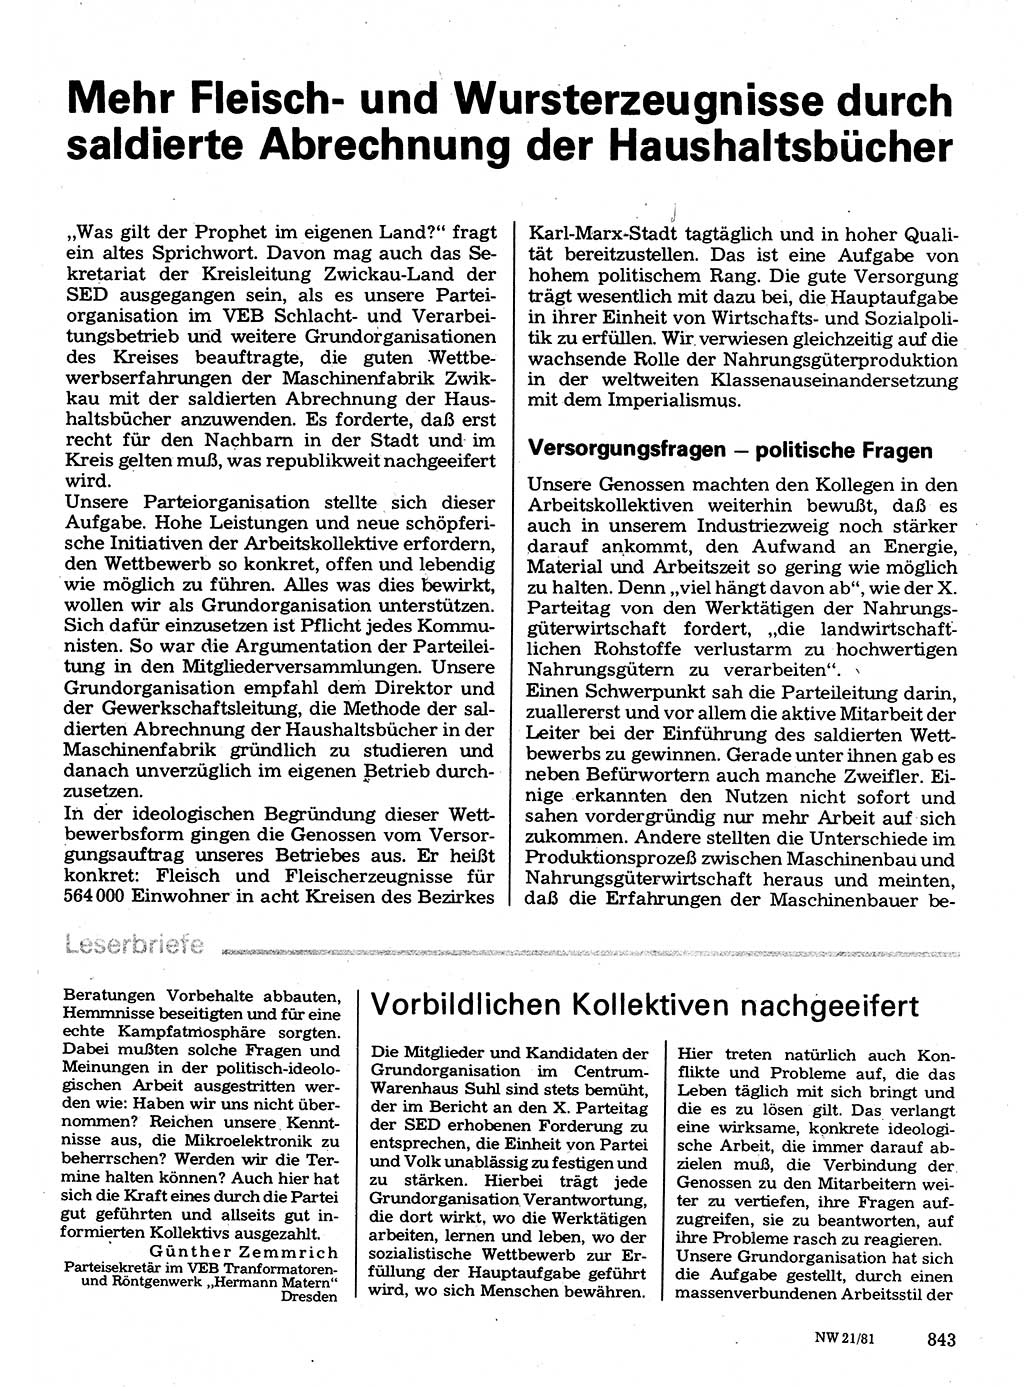 Neuer Weg (NW), Organ des Zentralkomitees (ZK) der SED (Sozialistische Einheitspartei Deutschlands) für Fragen des Parteilebens, 36. Jahrgang [Deutsche Demokratische Republik (DDR)] 1981, Seite 843 (NW ZK SED DDR 1981, S. 843)